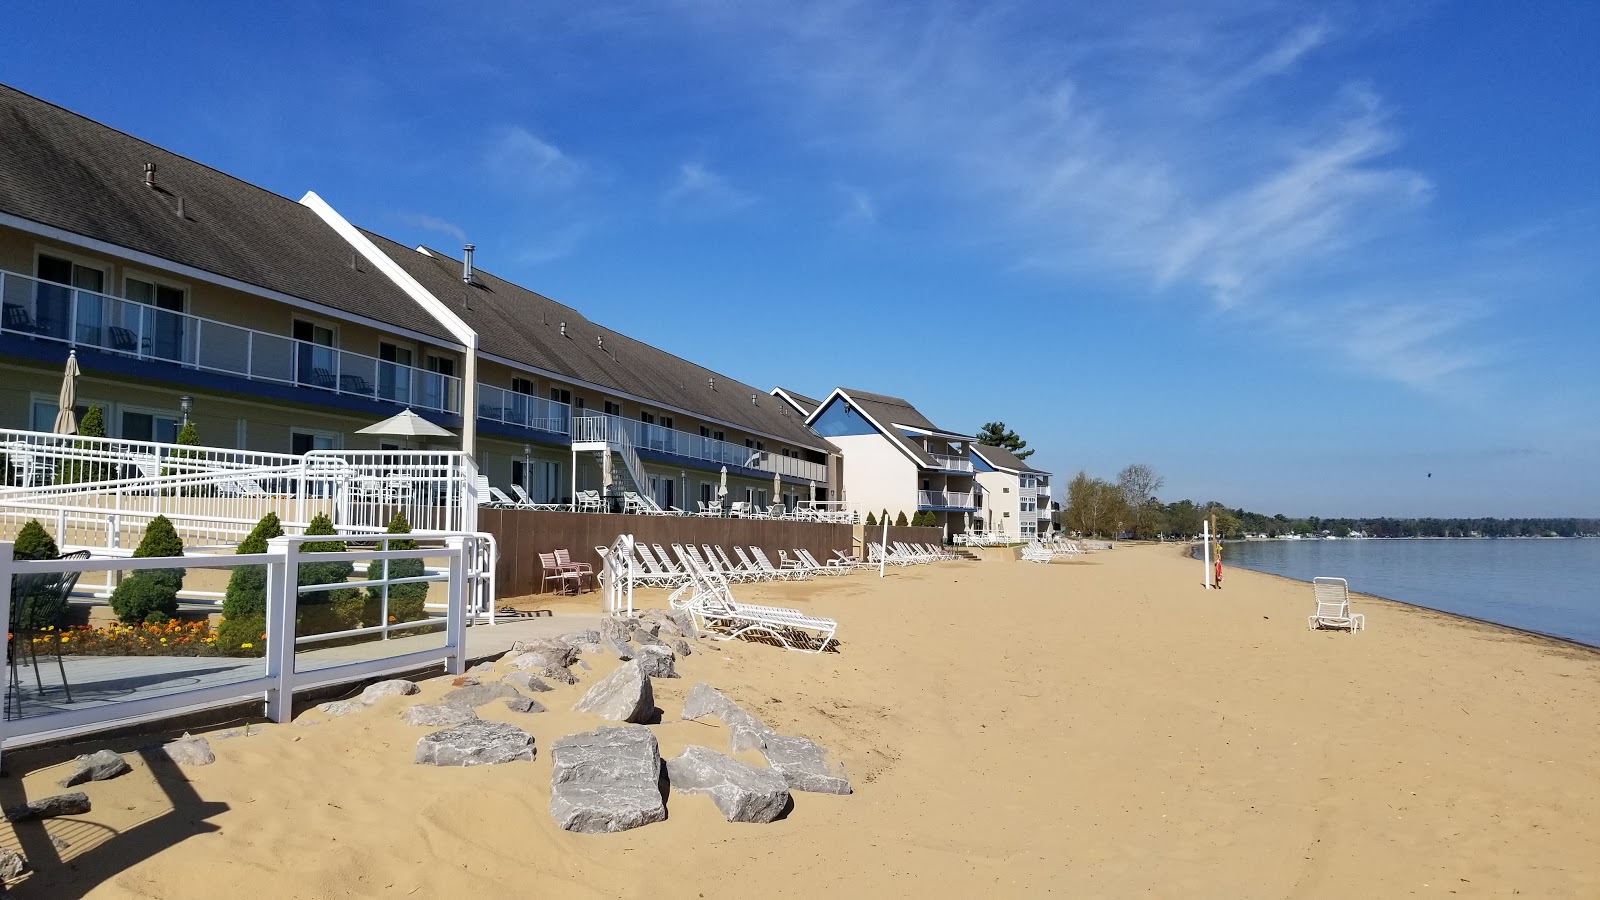 Traverse City State Park Beach'in fotoğrafı geniş plaj ile birlikte